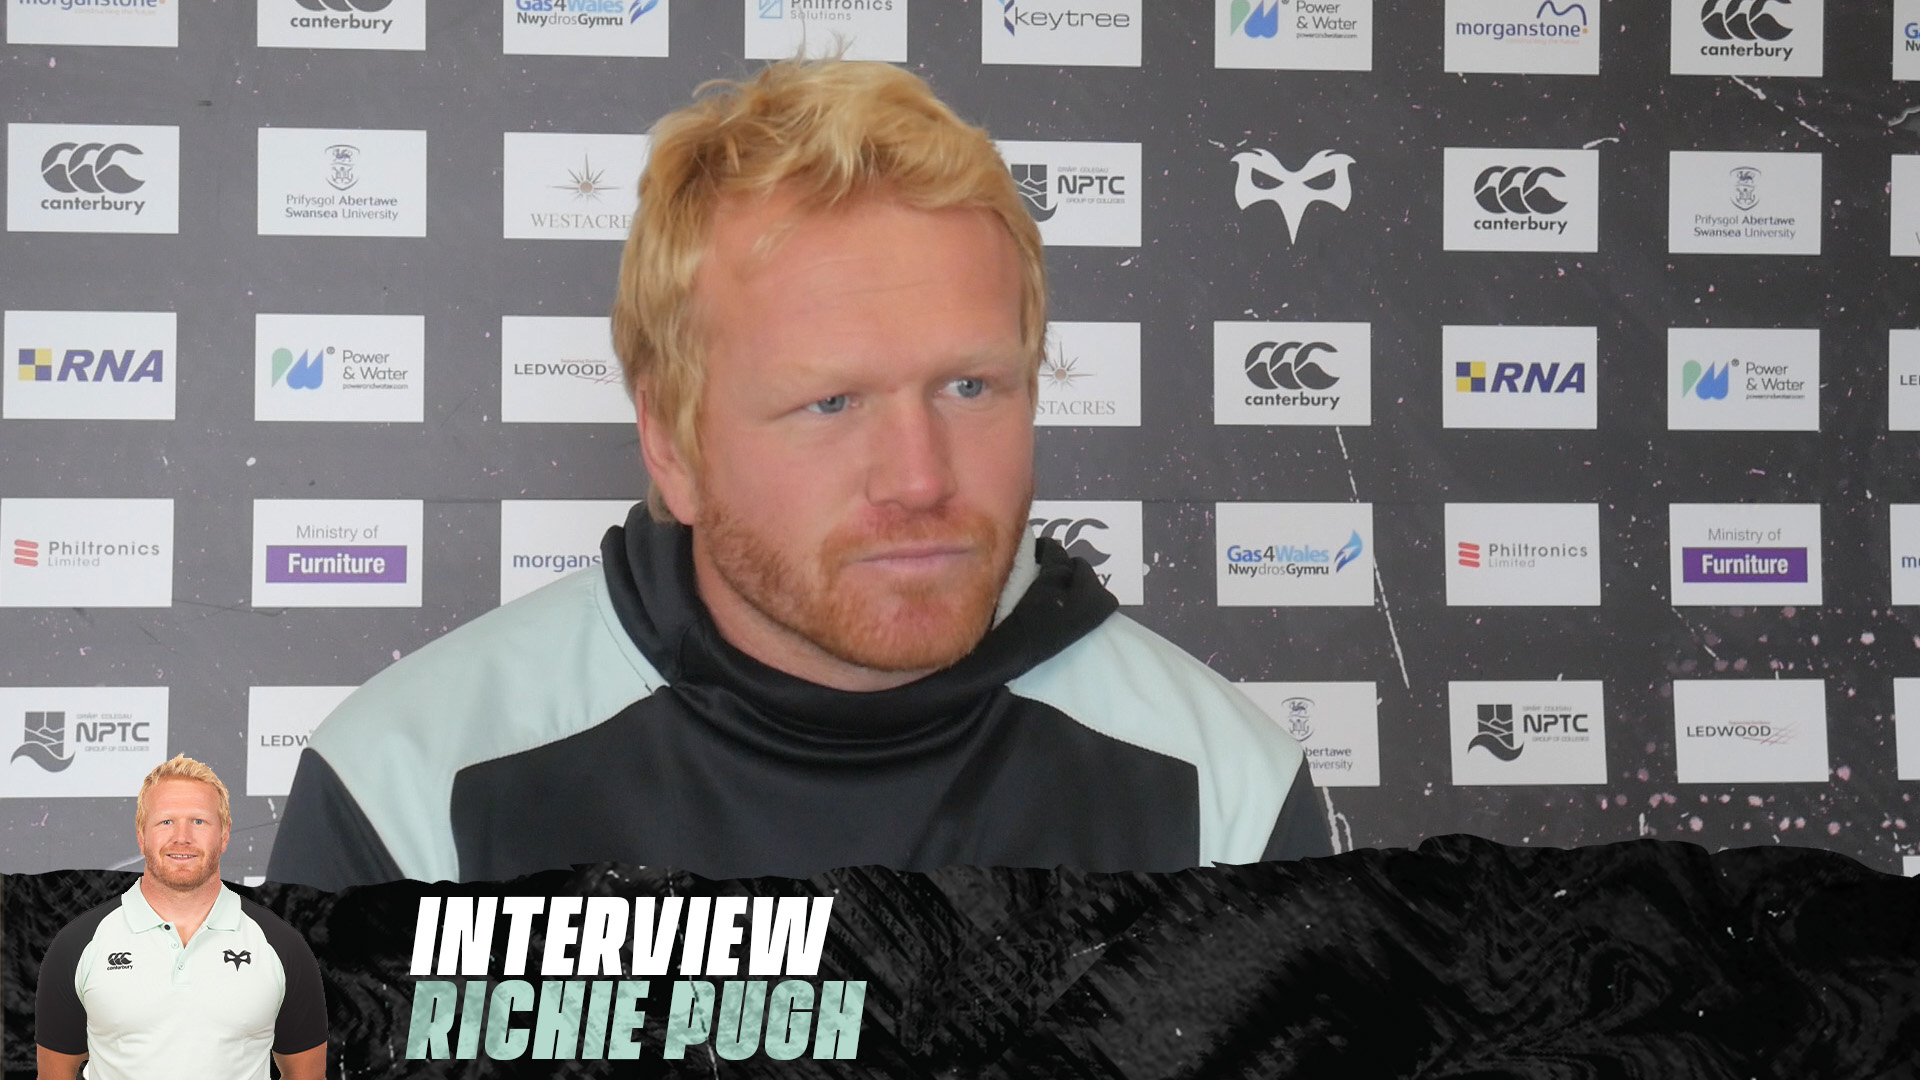 INTERVIEW: Richie Pugh